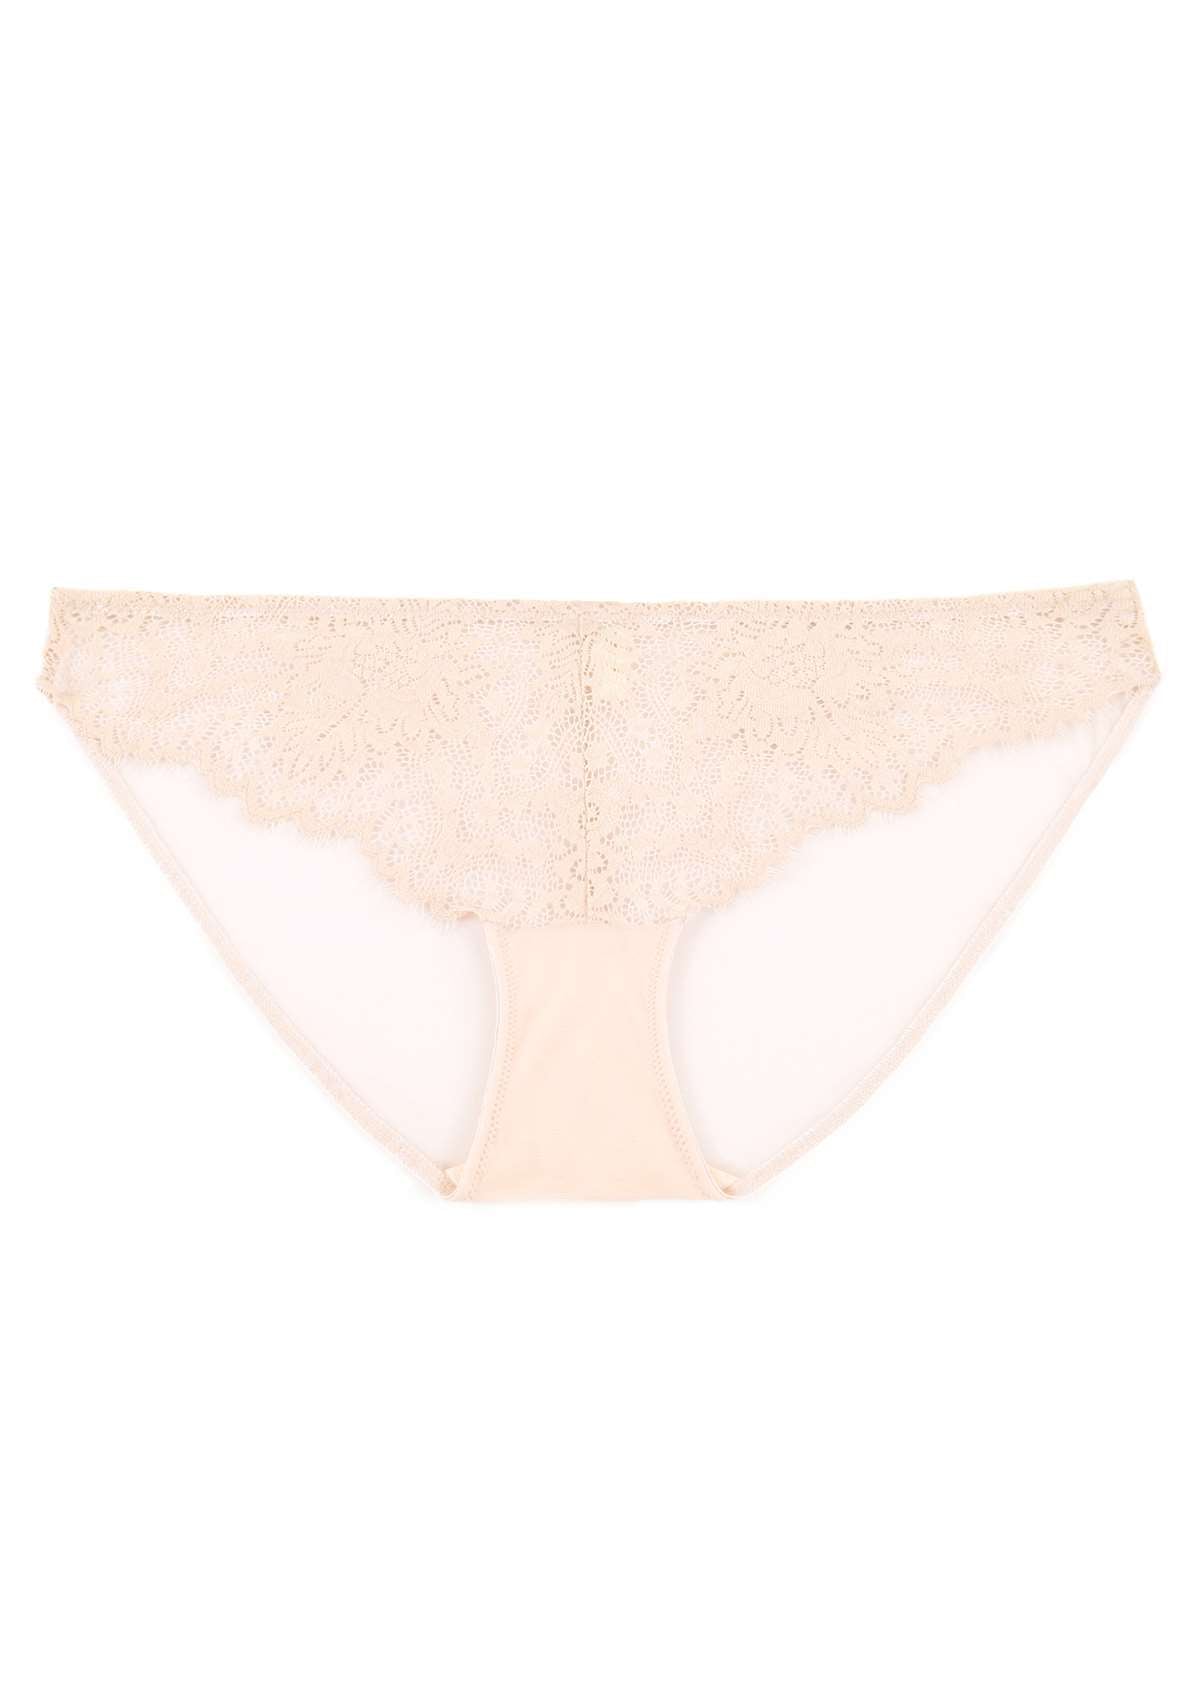 HSIA Sunflower Exquisite Pink Lace Bikini Underwear - XXL / High-Rise Brief / Pink